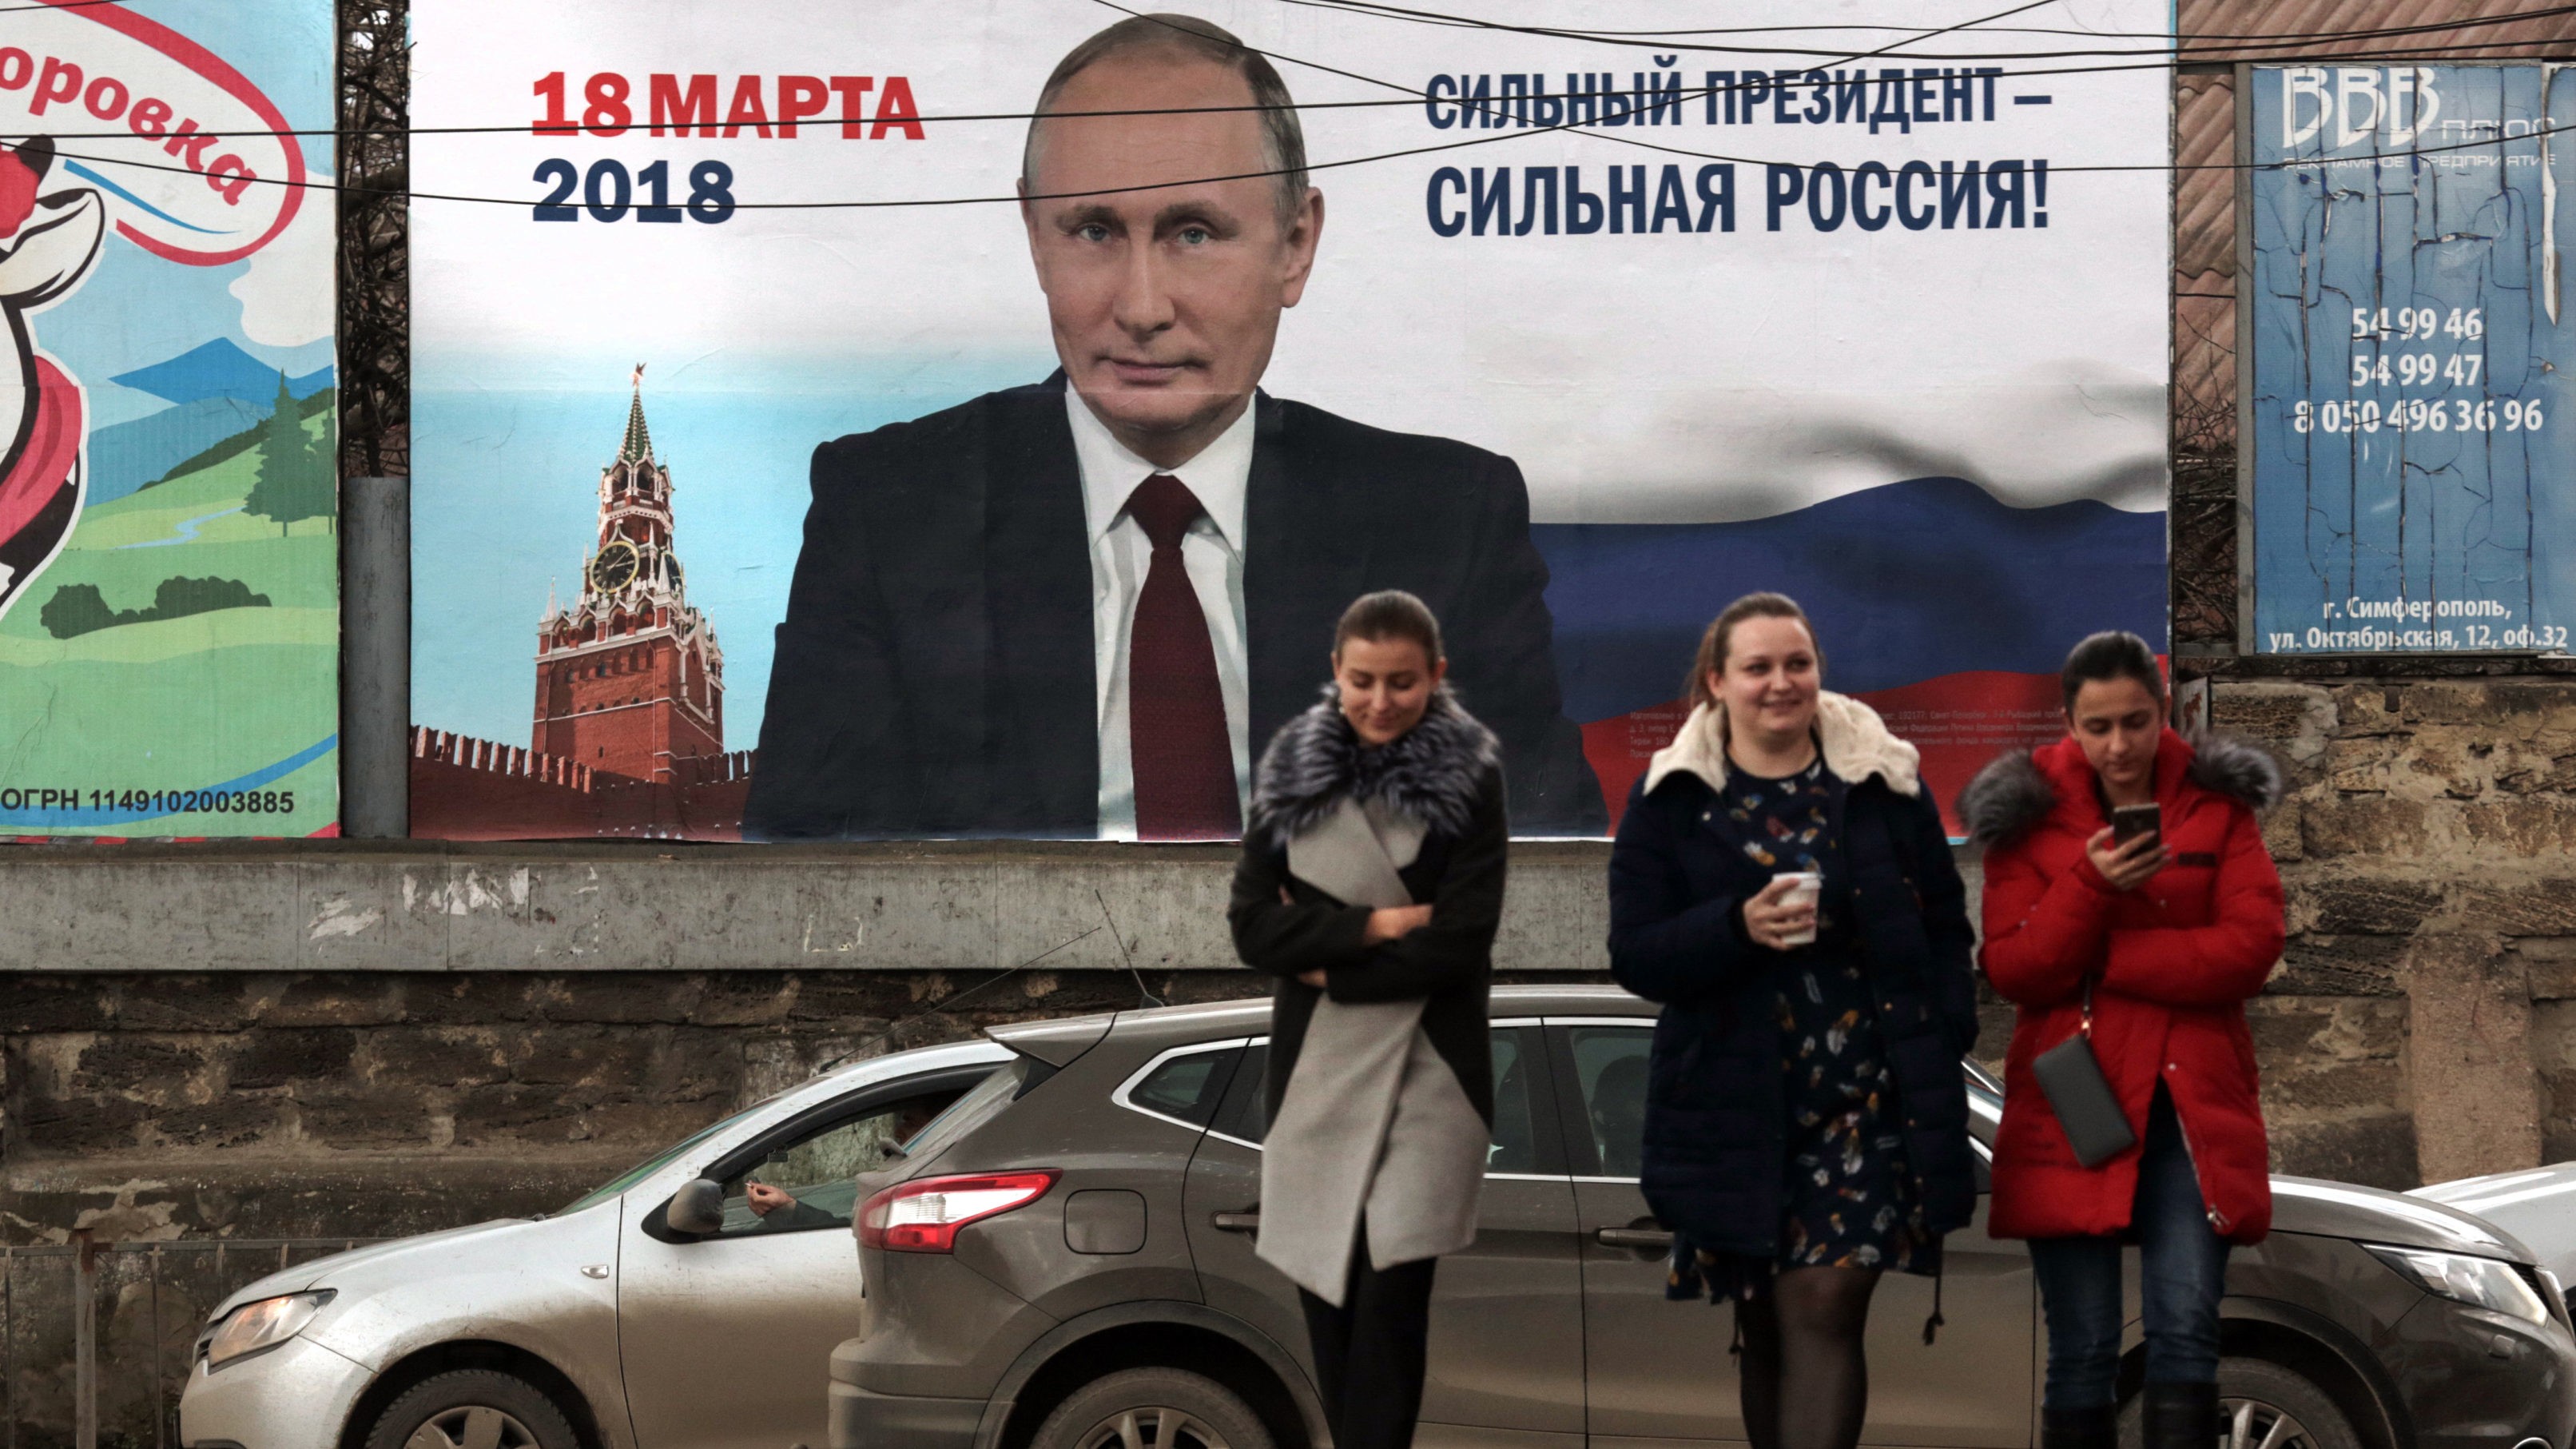 Am Sonntag sind in Russland Präsidentschaftswahlen. Die Ukraine hat russischen Staatsbürgern die Teilnahme nun untersagt. Grund sei die Rechtswidrigkeit der Wahl auf der Krim. (Bild: AFP)